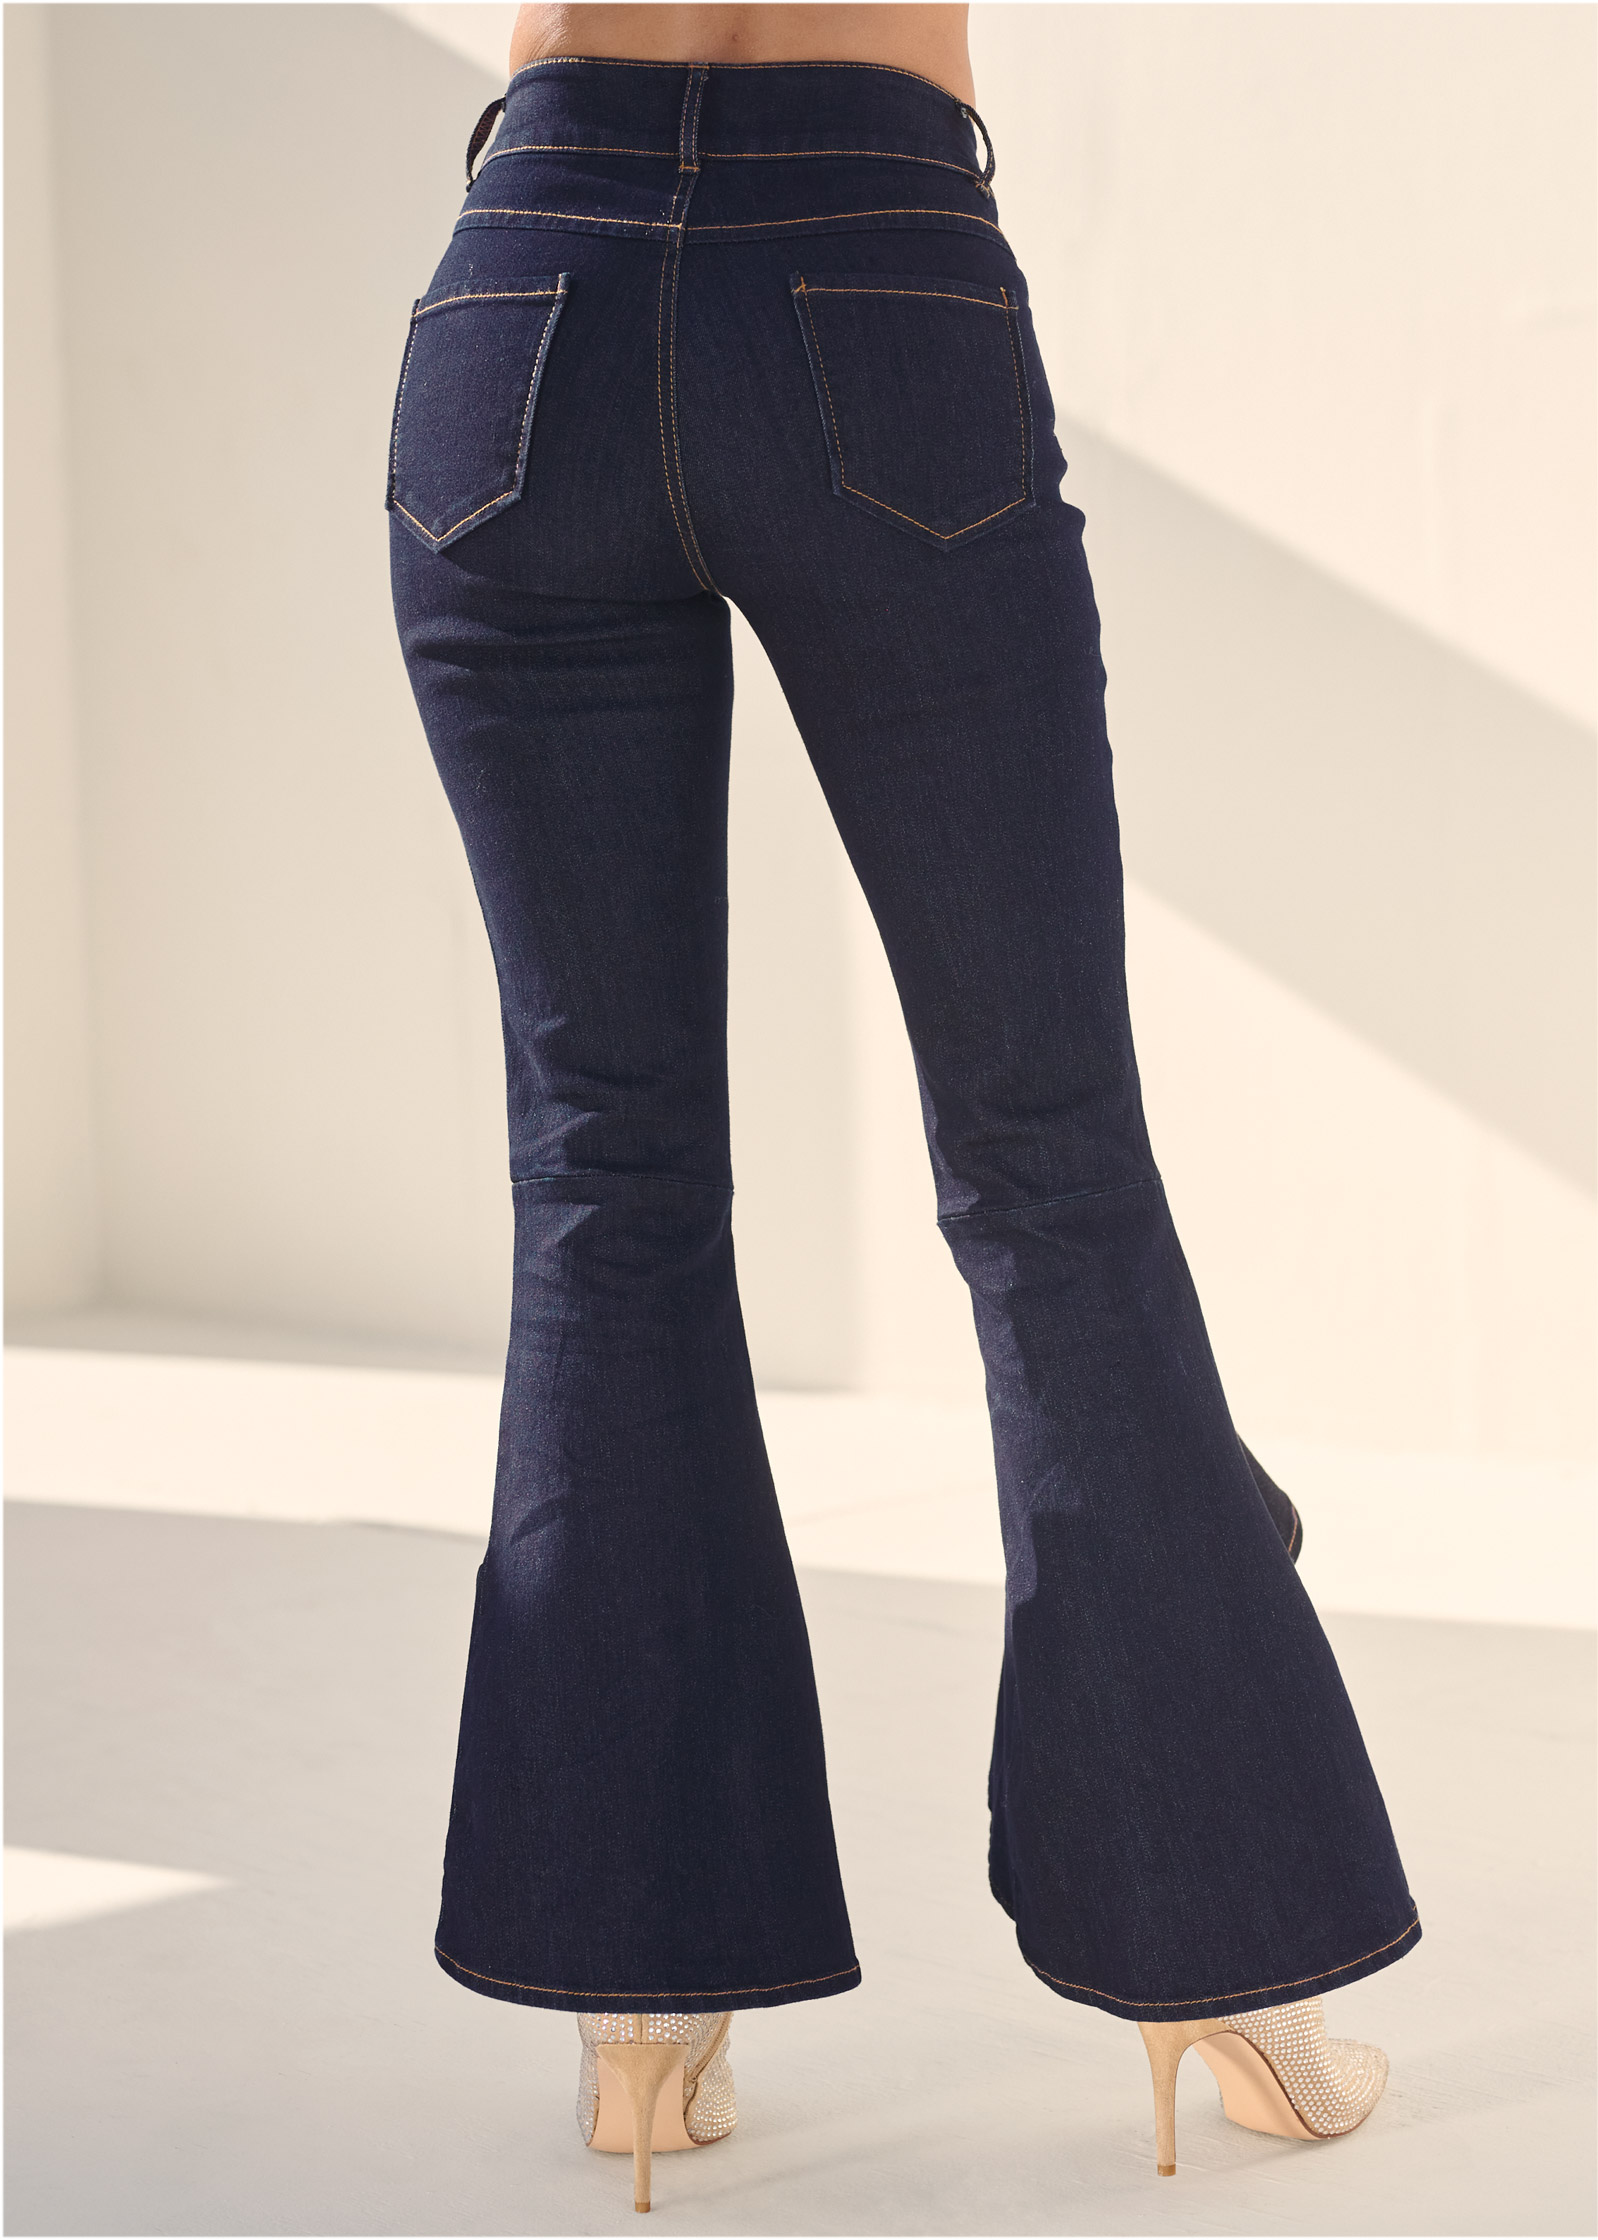 Ruffle Slit Hem Jeans in Indigo Blue - Denim | VENUS